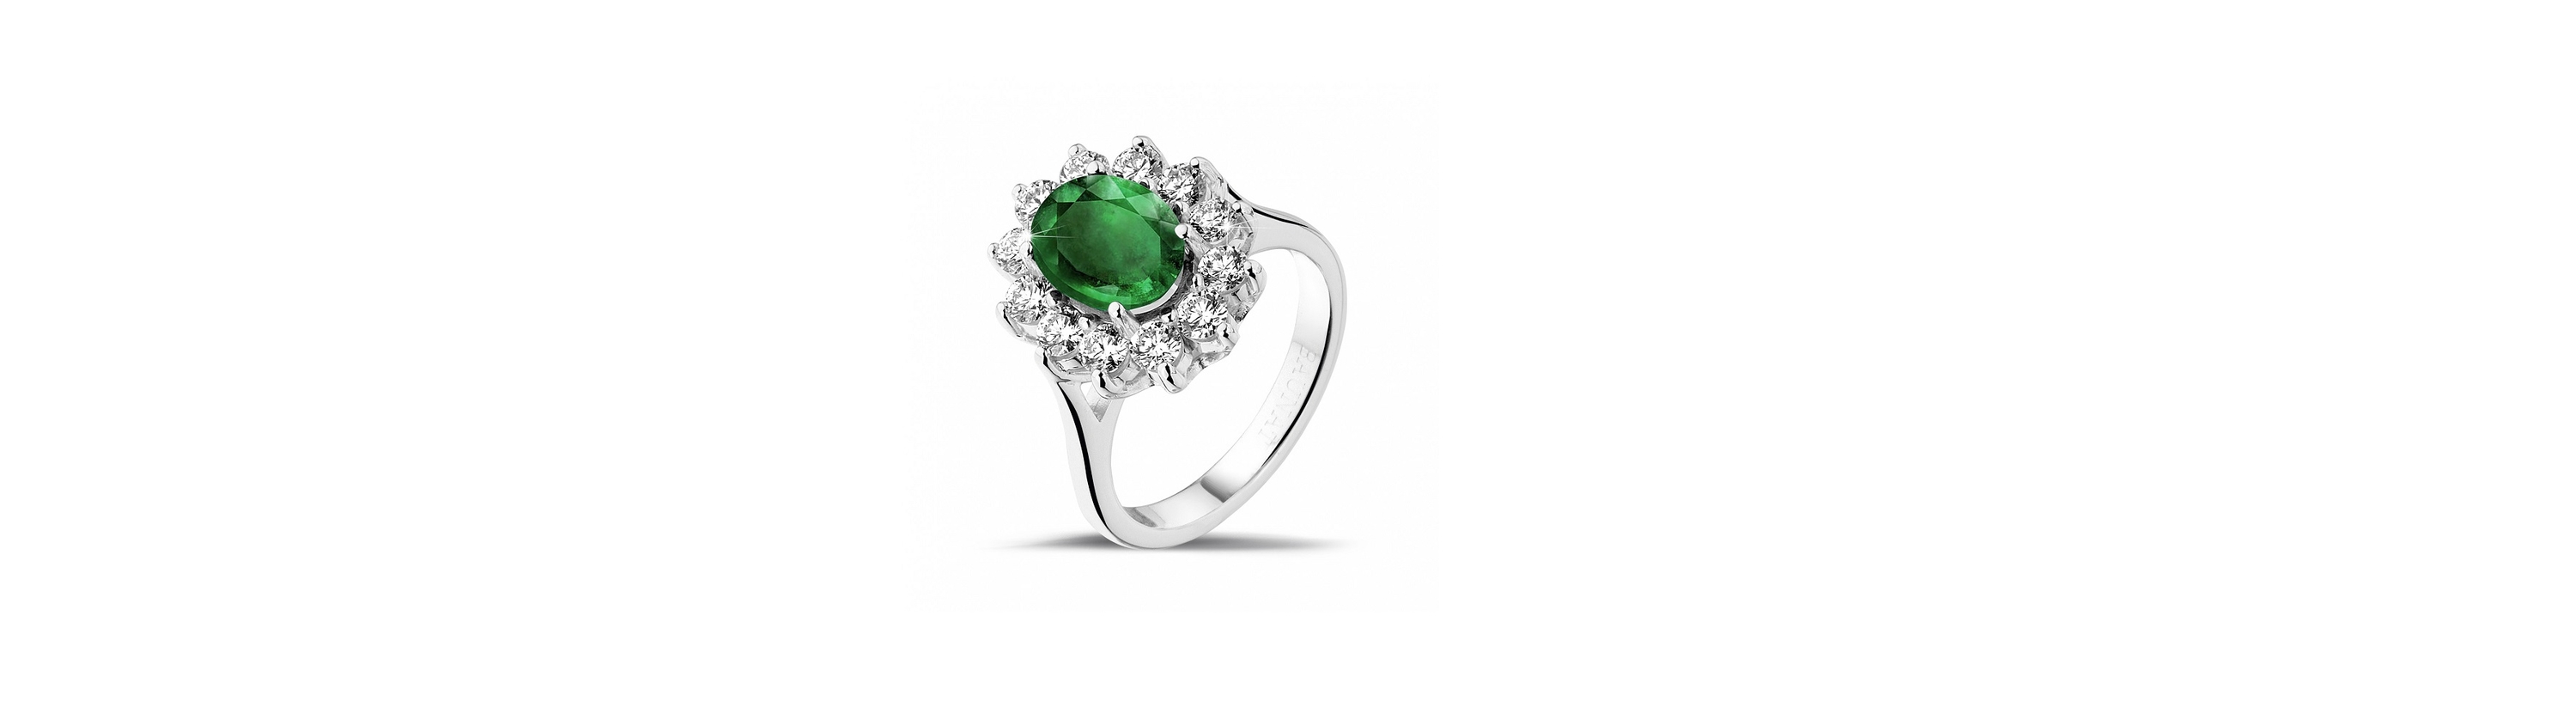 Soll ich einen grünen Saphir im Verlobungsring wählen?